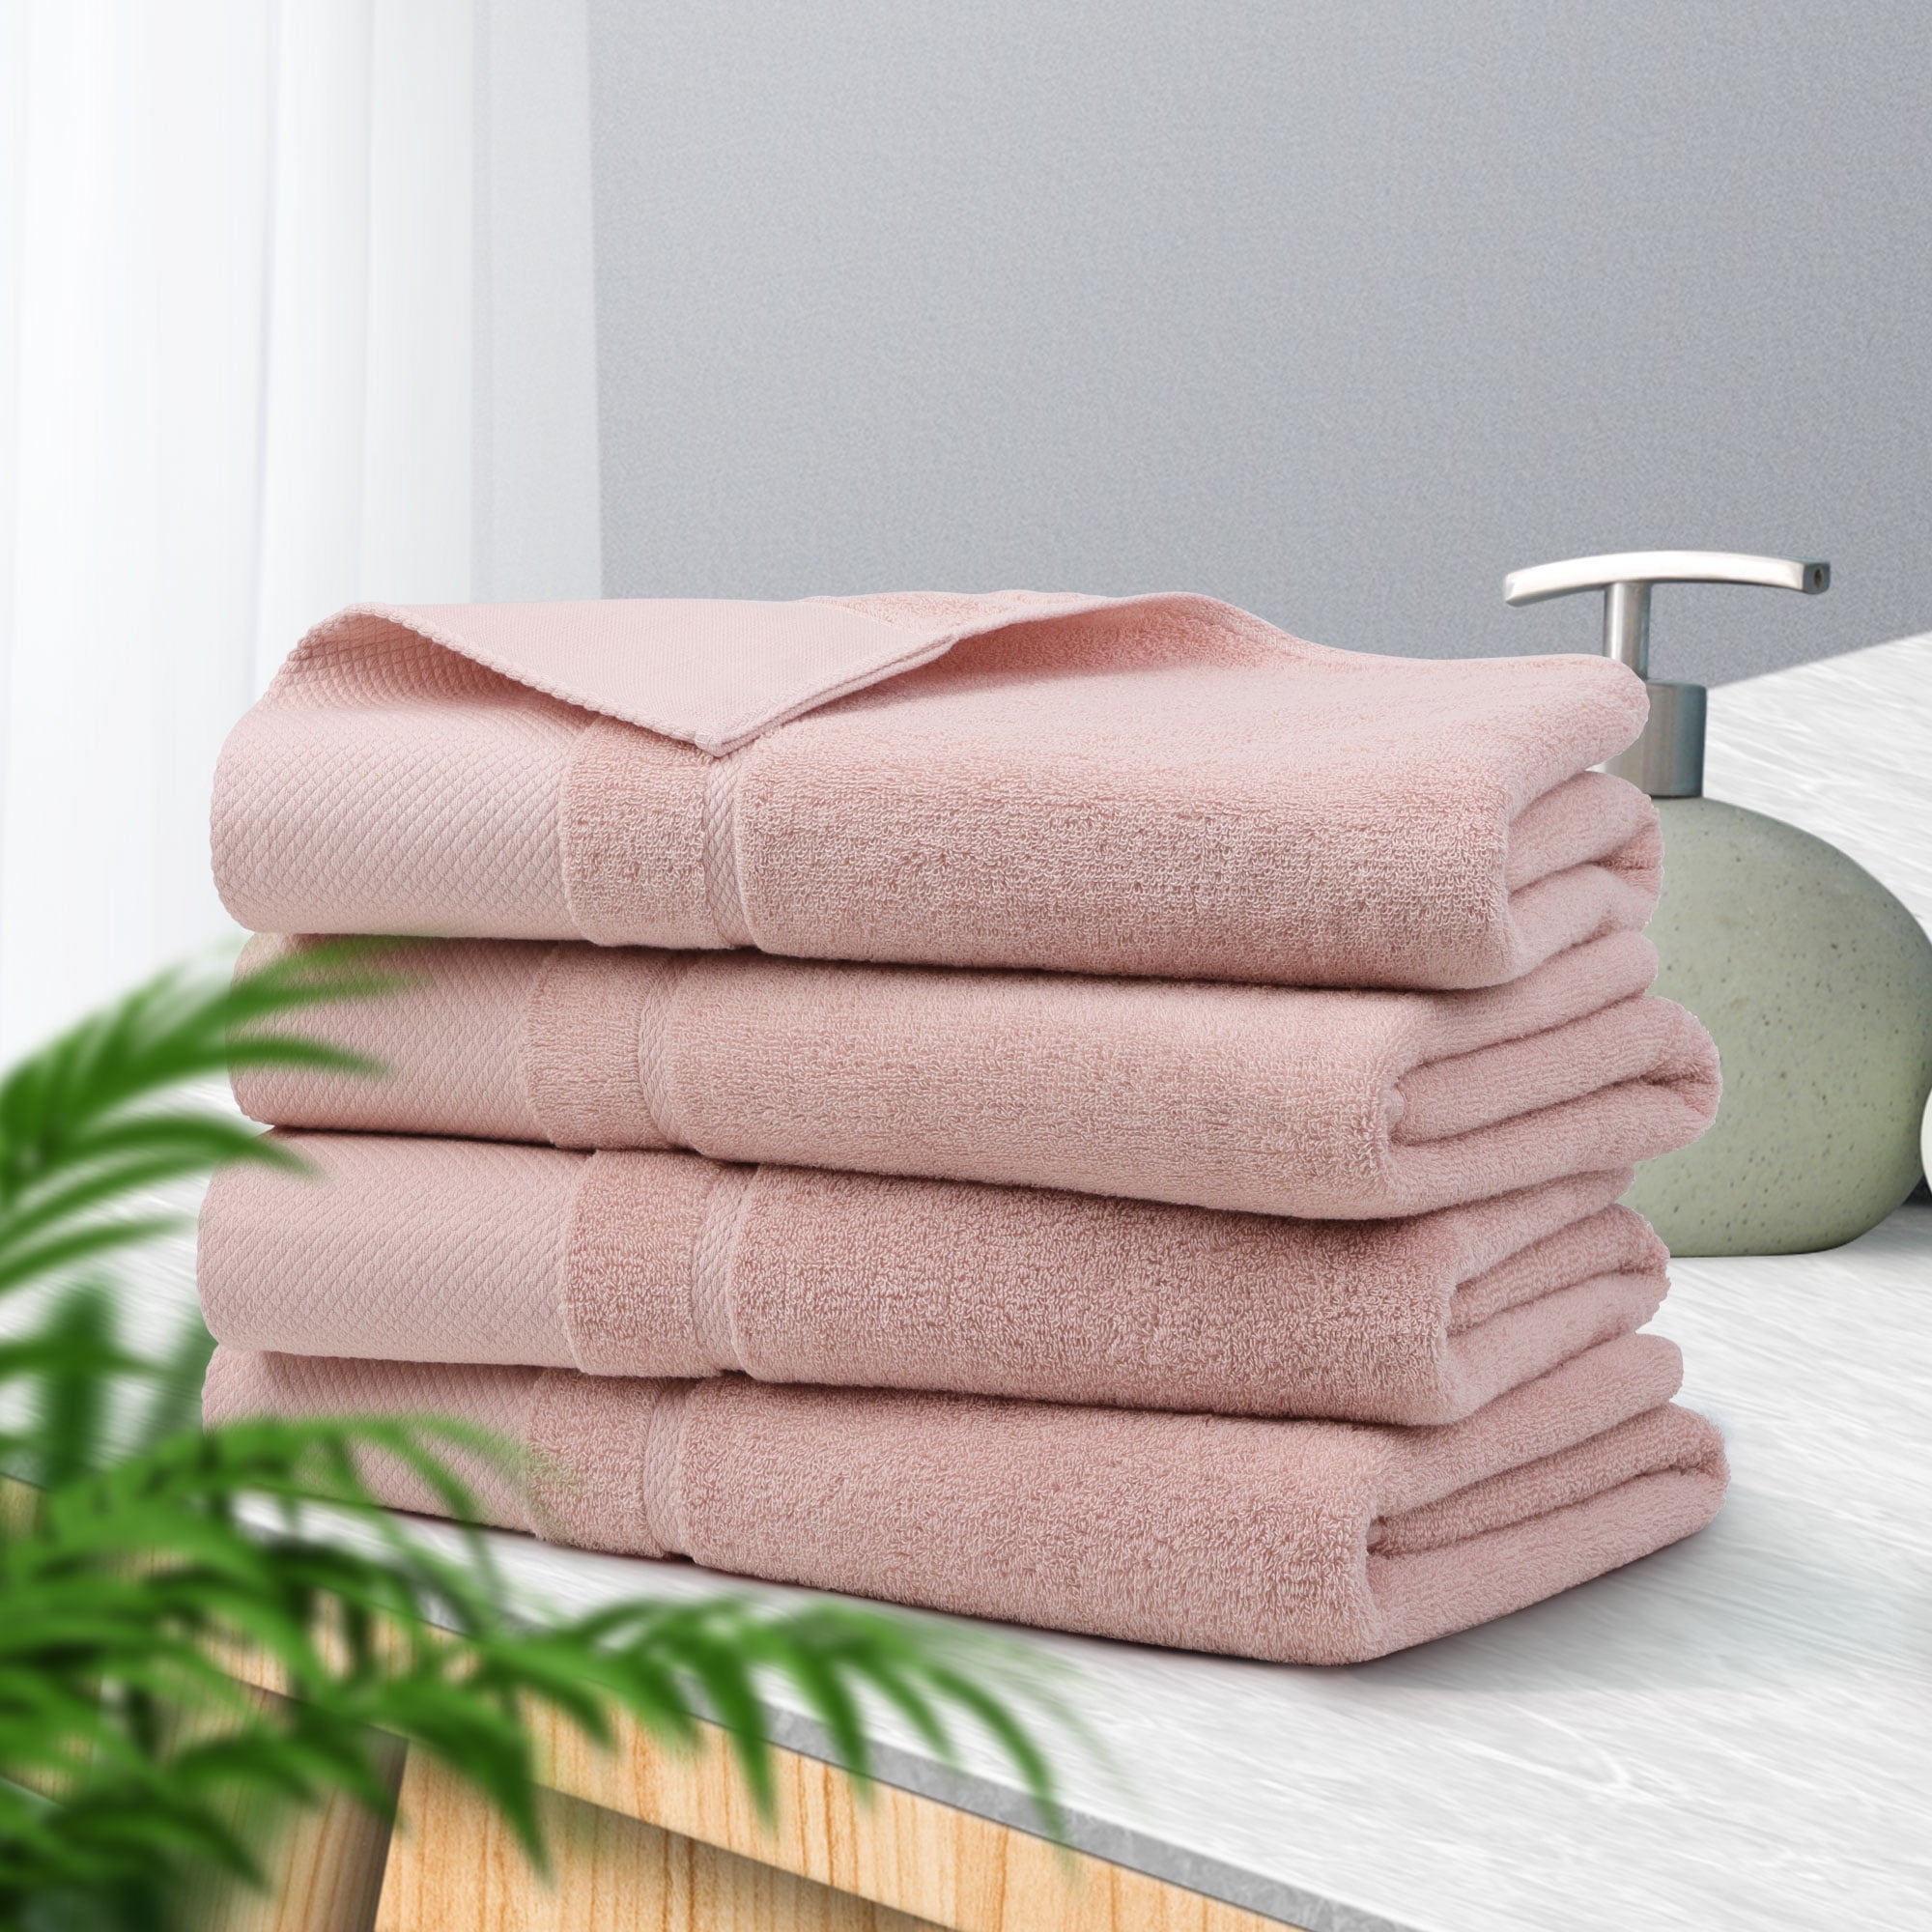 Unique Bargain Absorbent Cotton Bath Towel Set - Sears Marketplace